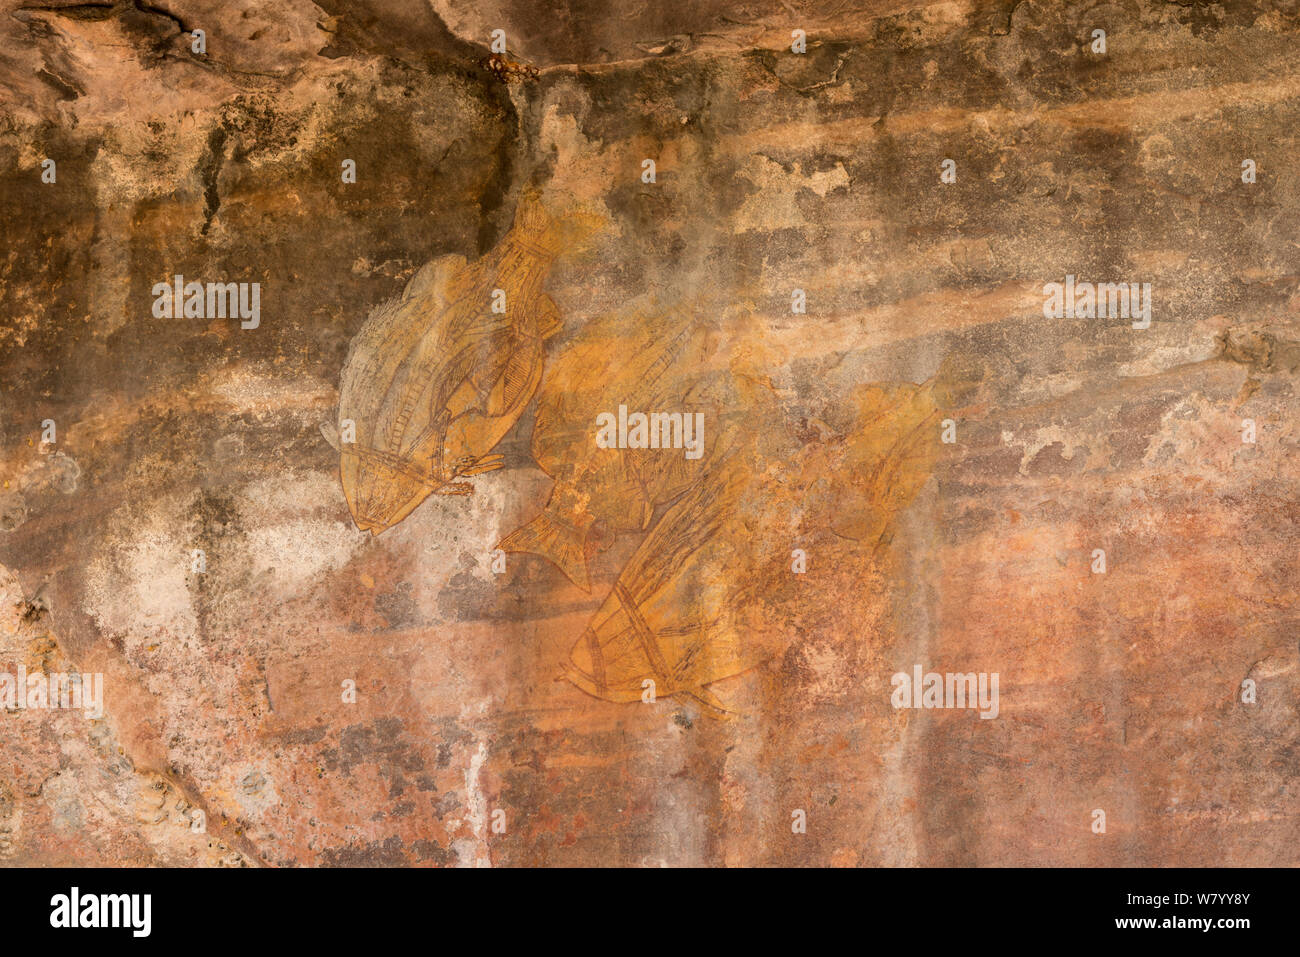 Art rupestre aborigène de poissons, le Kakadu National Park, Territoire du Nord, Australie. Décembre 2012. Banque D'Images